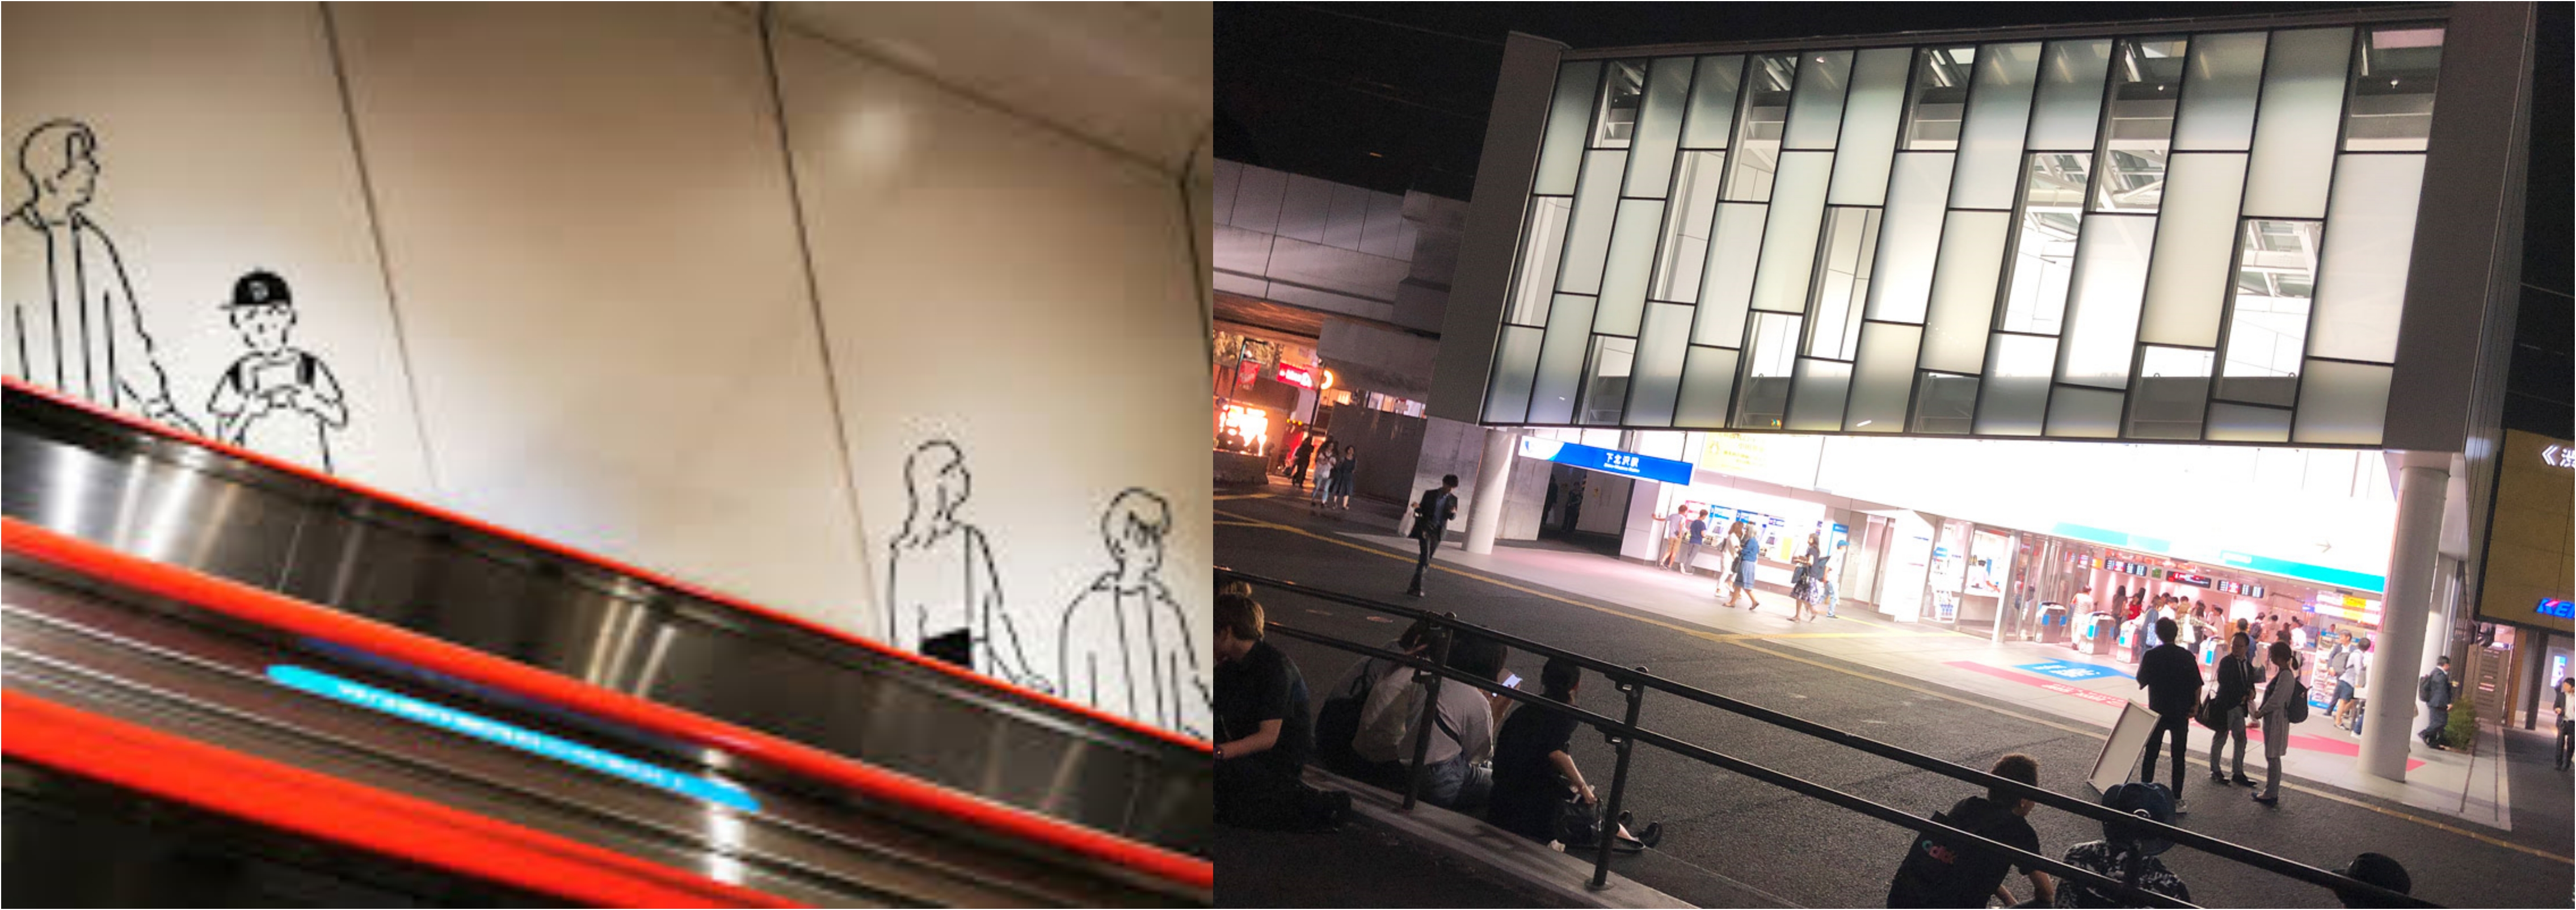 오다큐센 지하철 에스컬레이터 벽면엔 나가바 유의 그림이 있어요. 역앞의 크기와 상관없이 누굴 기다리거나 멍~하거나, 하릴 없이 머물 장소가 있다는 건 도시의 여백이자 곧 상냥함이라 느껴요.